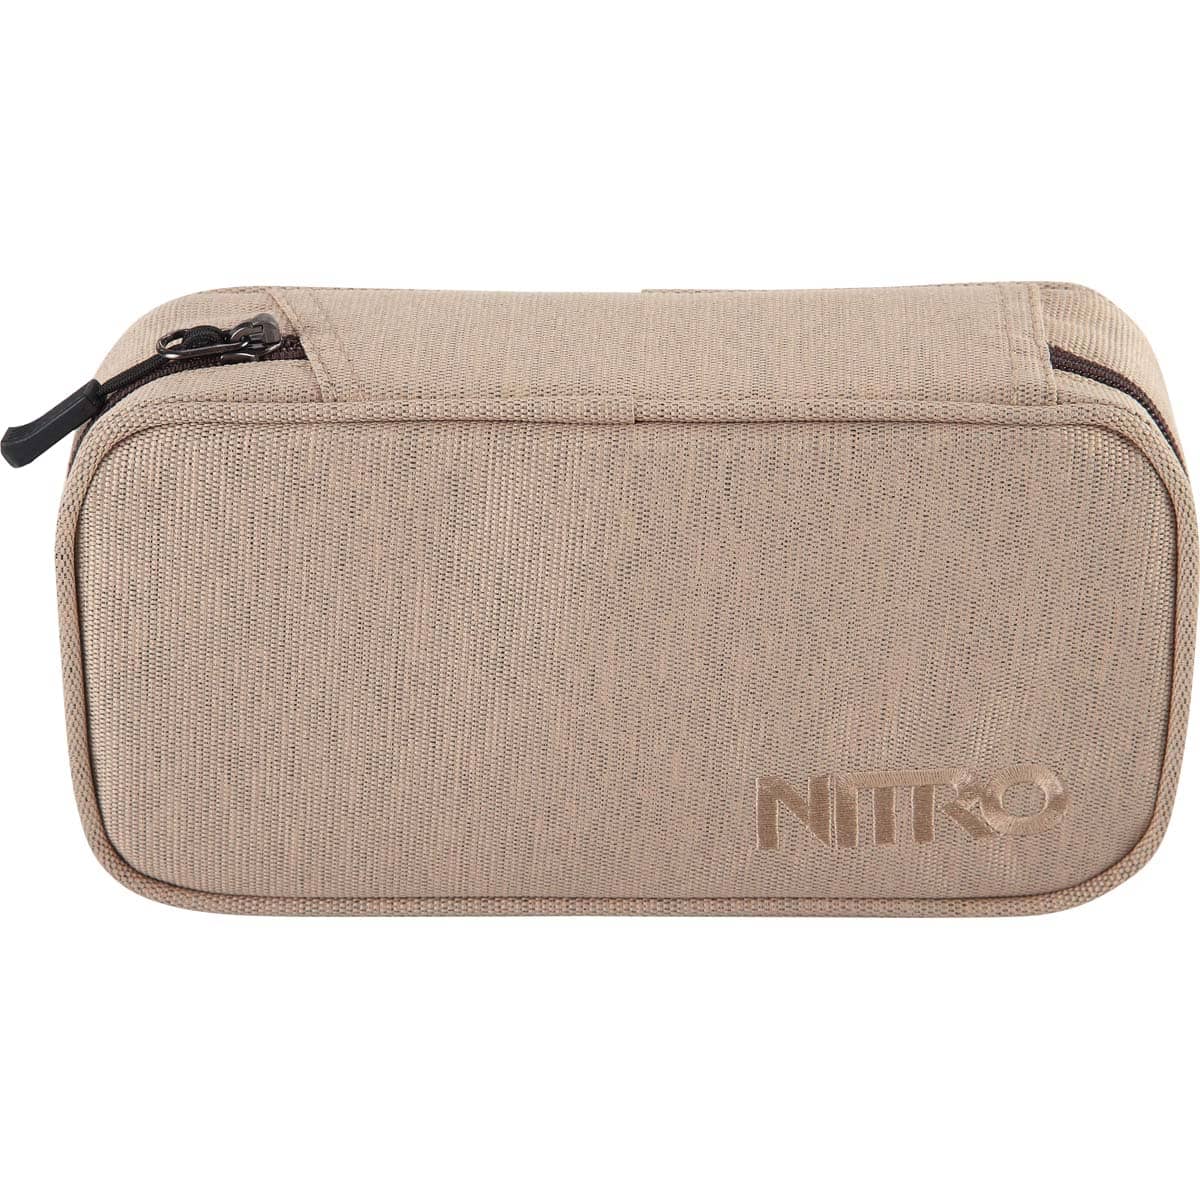 Nitro Pencil Case XL Almond | Nitrobags Shop